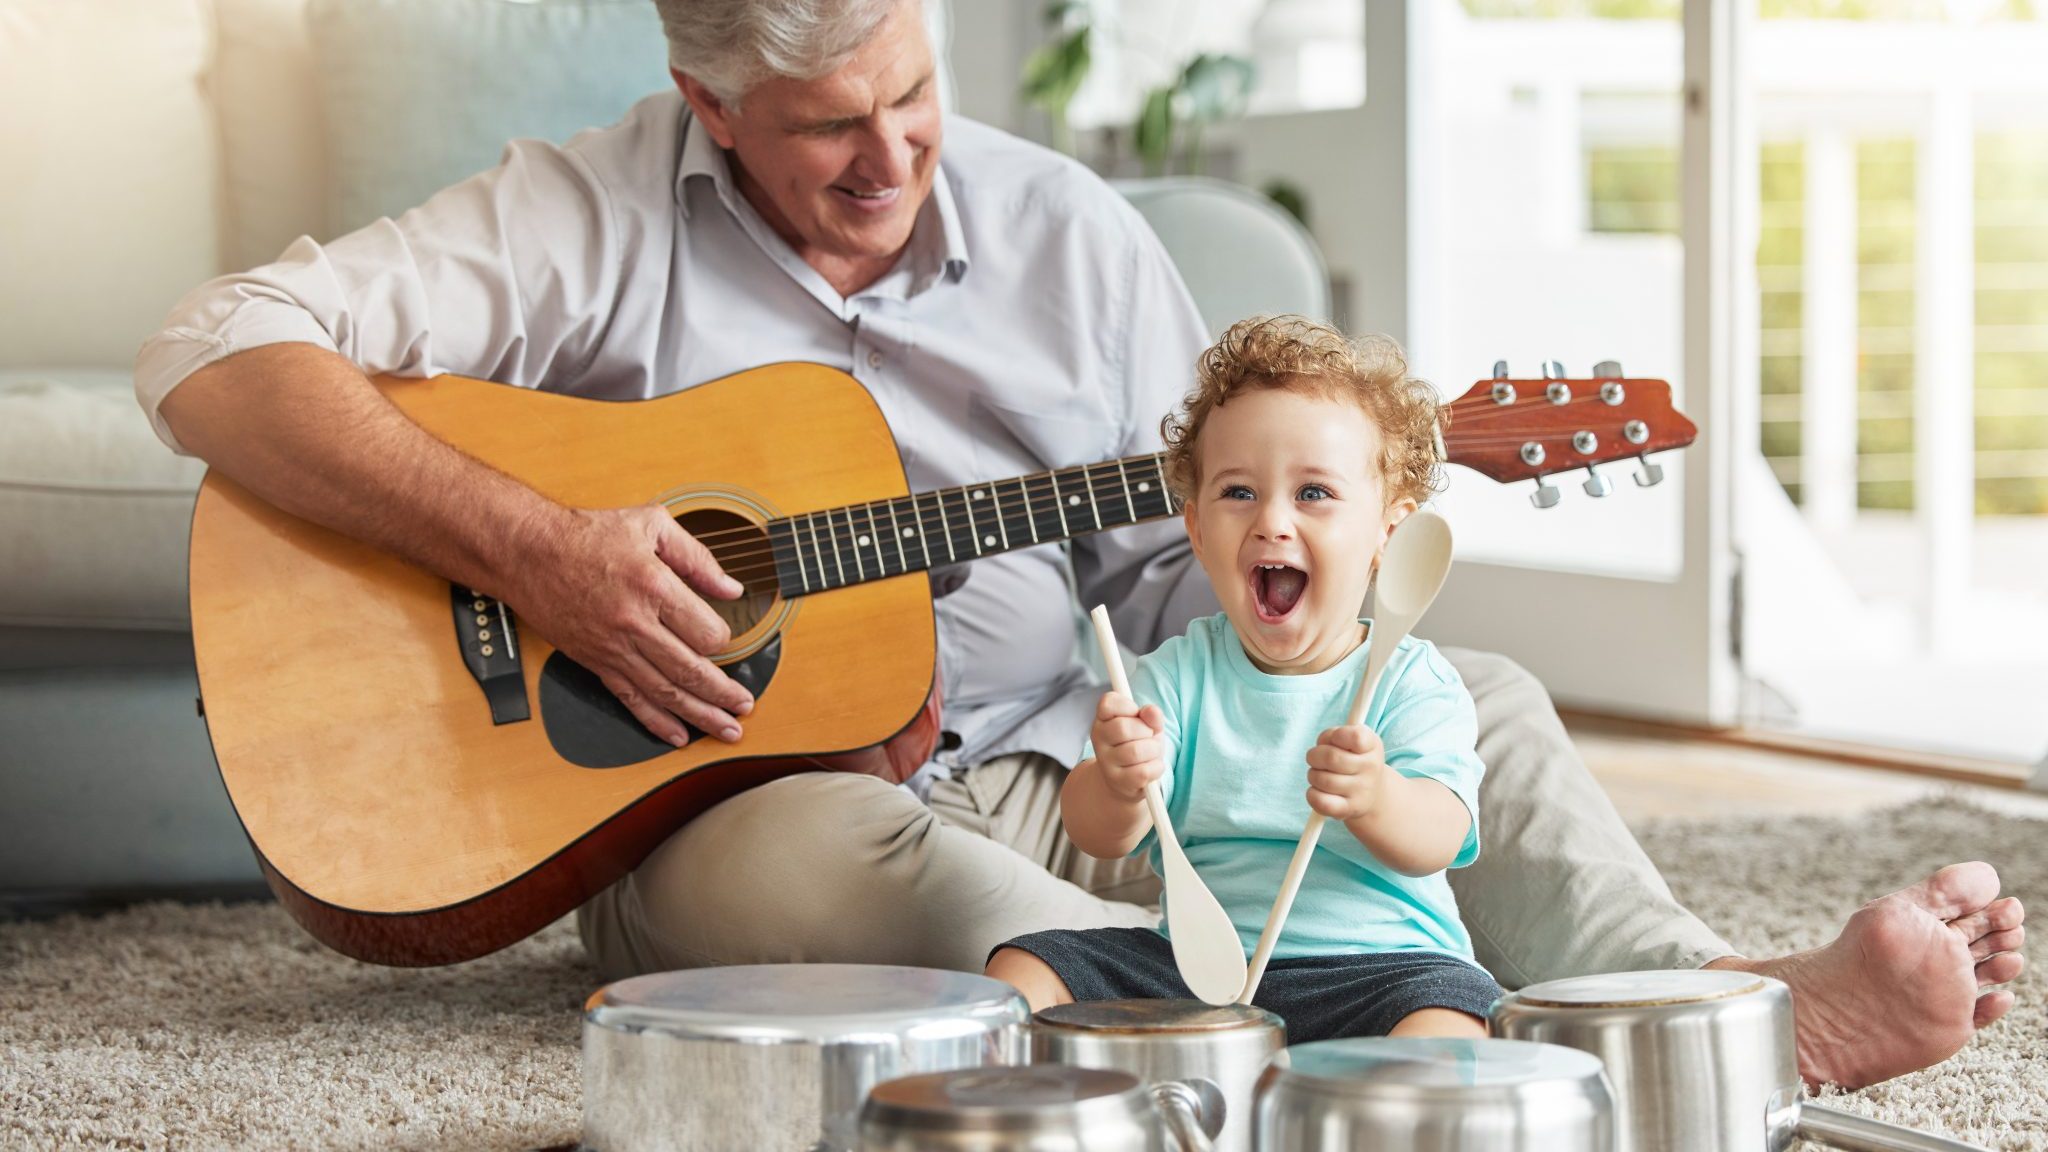 Quelle influence a la musique sur le développement cognitif de bébé ?